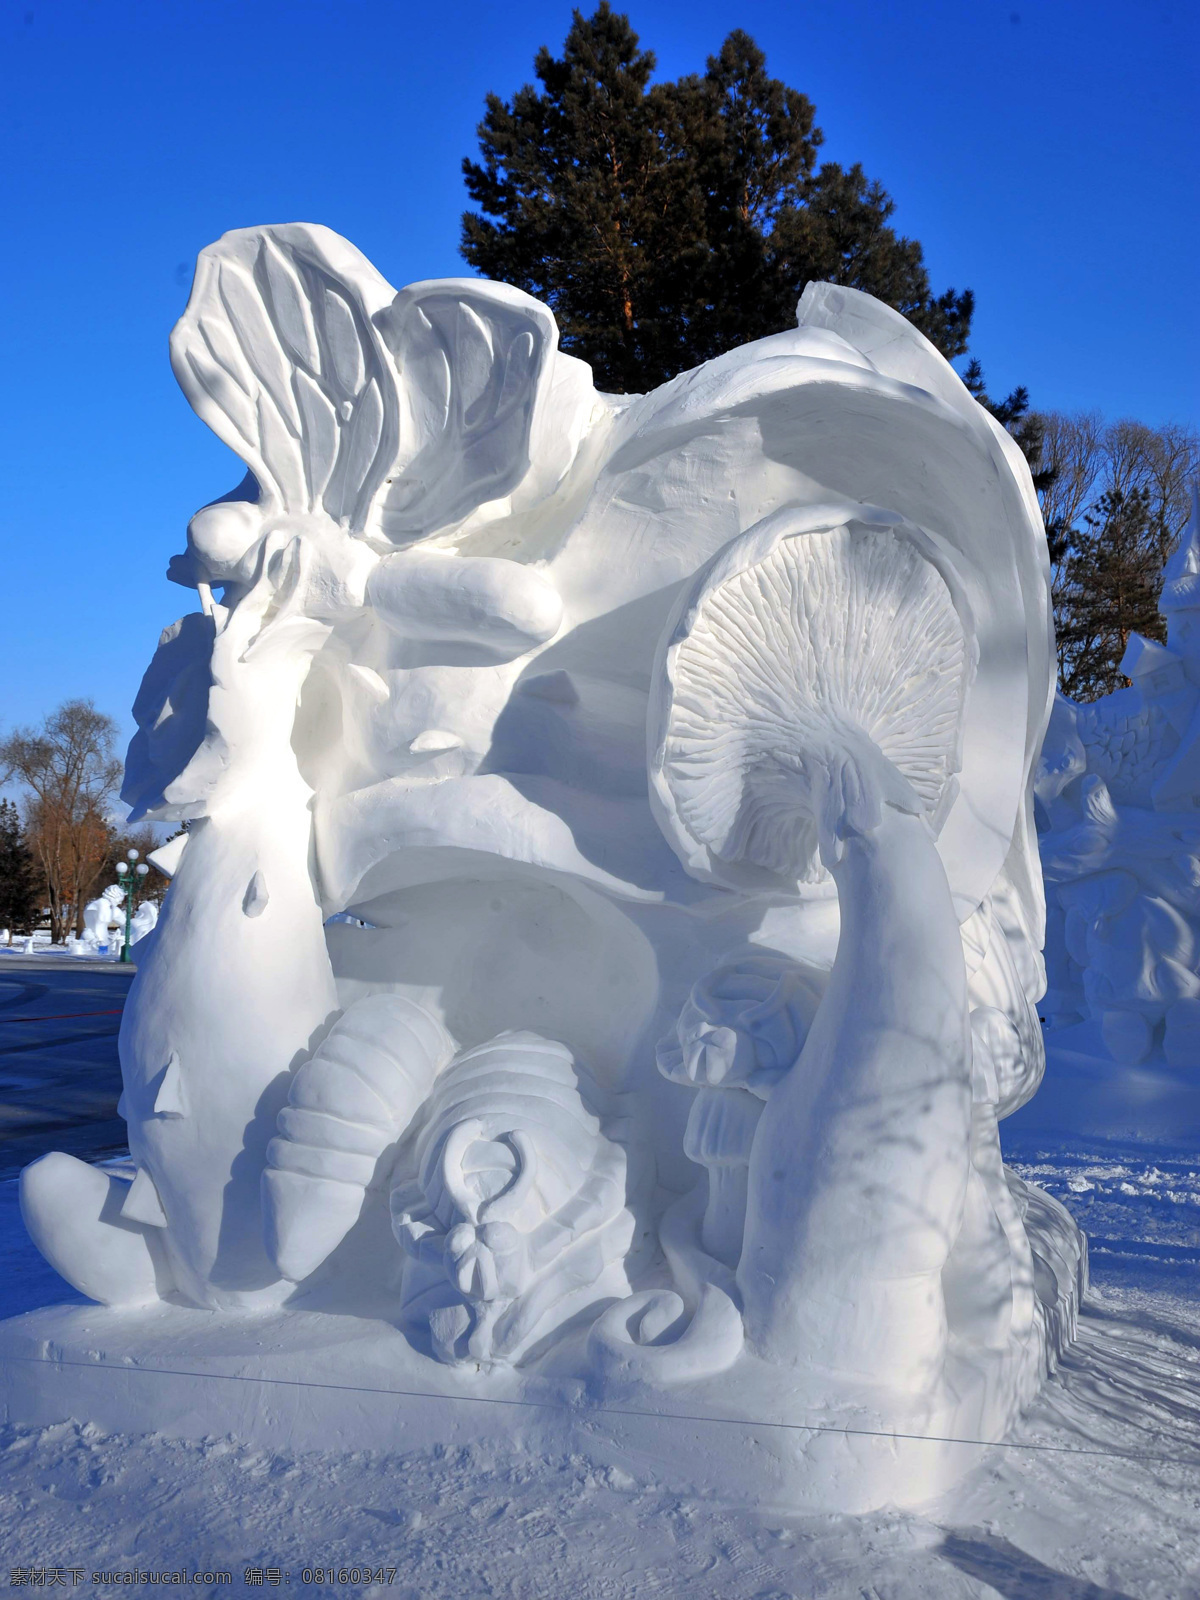 太阳岛雪雕 雪雕 国际冰雪节 雪雕比赛 太阳岛冰雪 获奖雪雕作品 哈尔滨 冰雪 艺术 雕塑 建筑园林